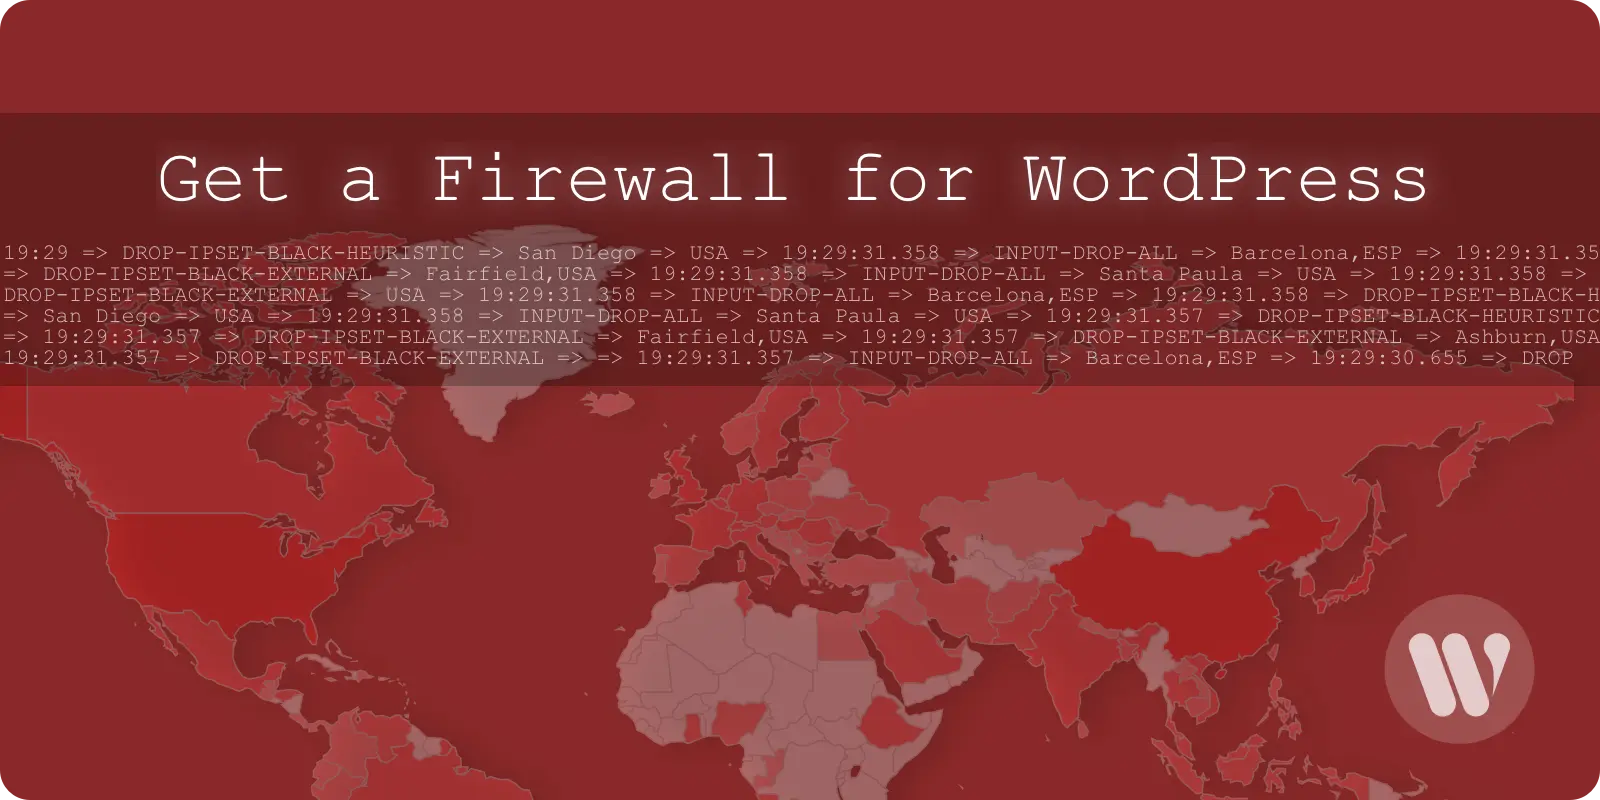 Get a Firewall for WordPress